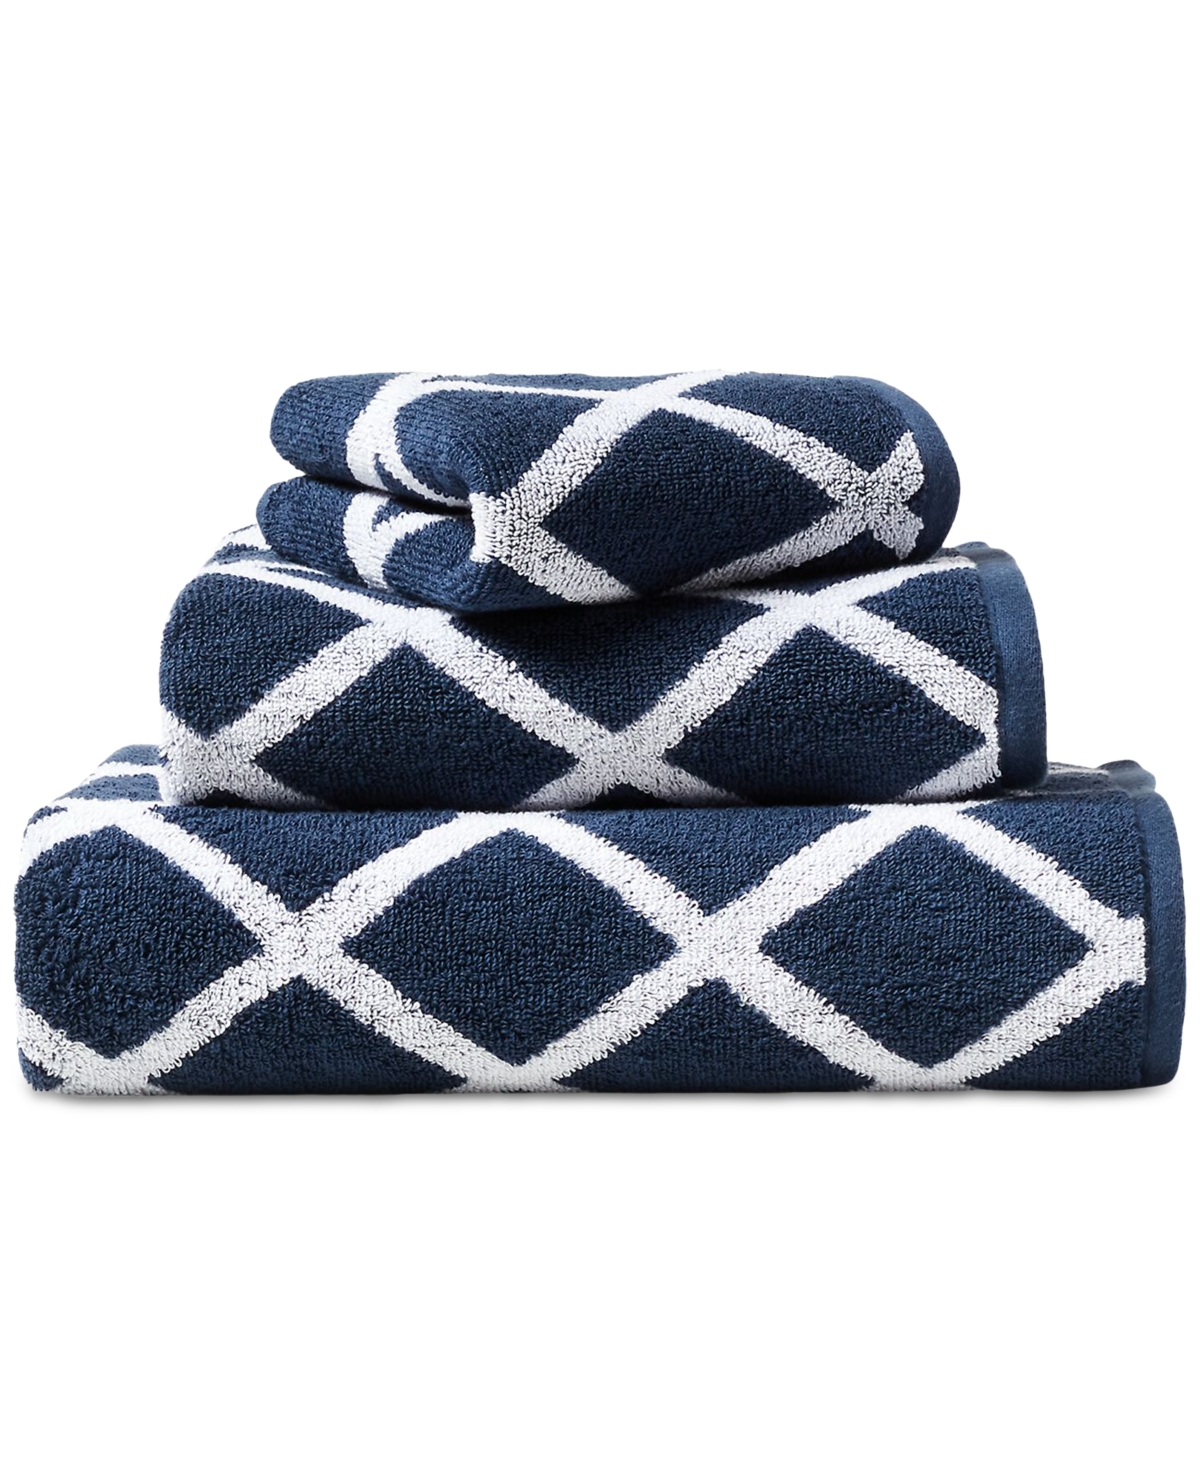 Lauren Ralph Lauren Sanders Diamond Cotton Bath Towel Bedding In Navy